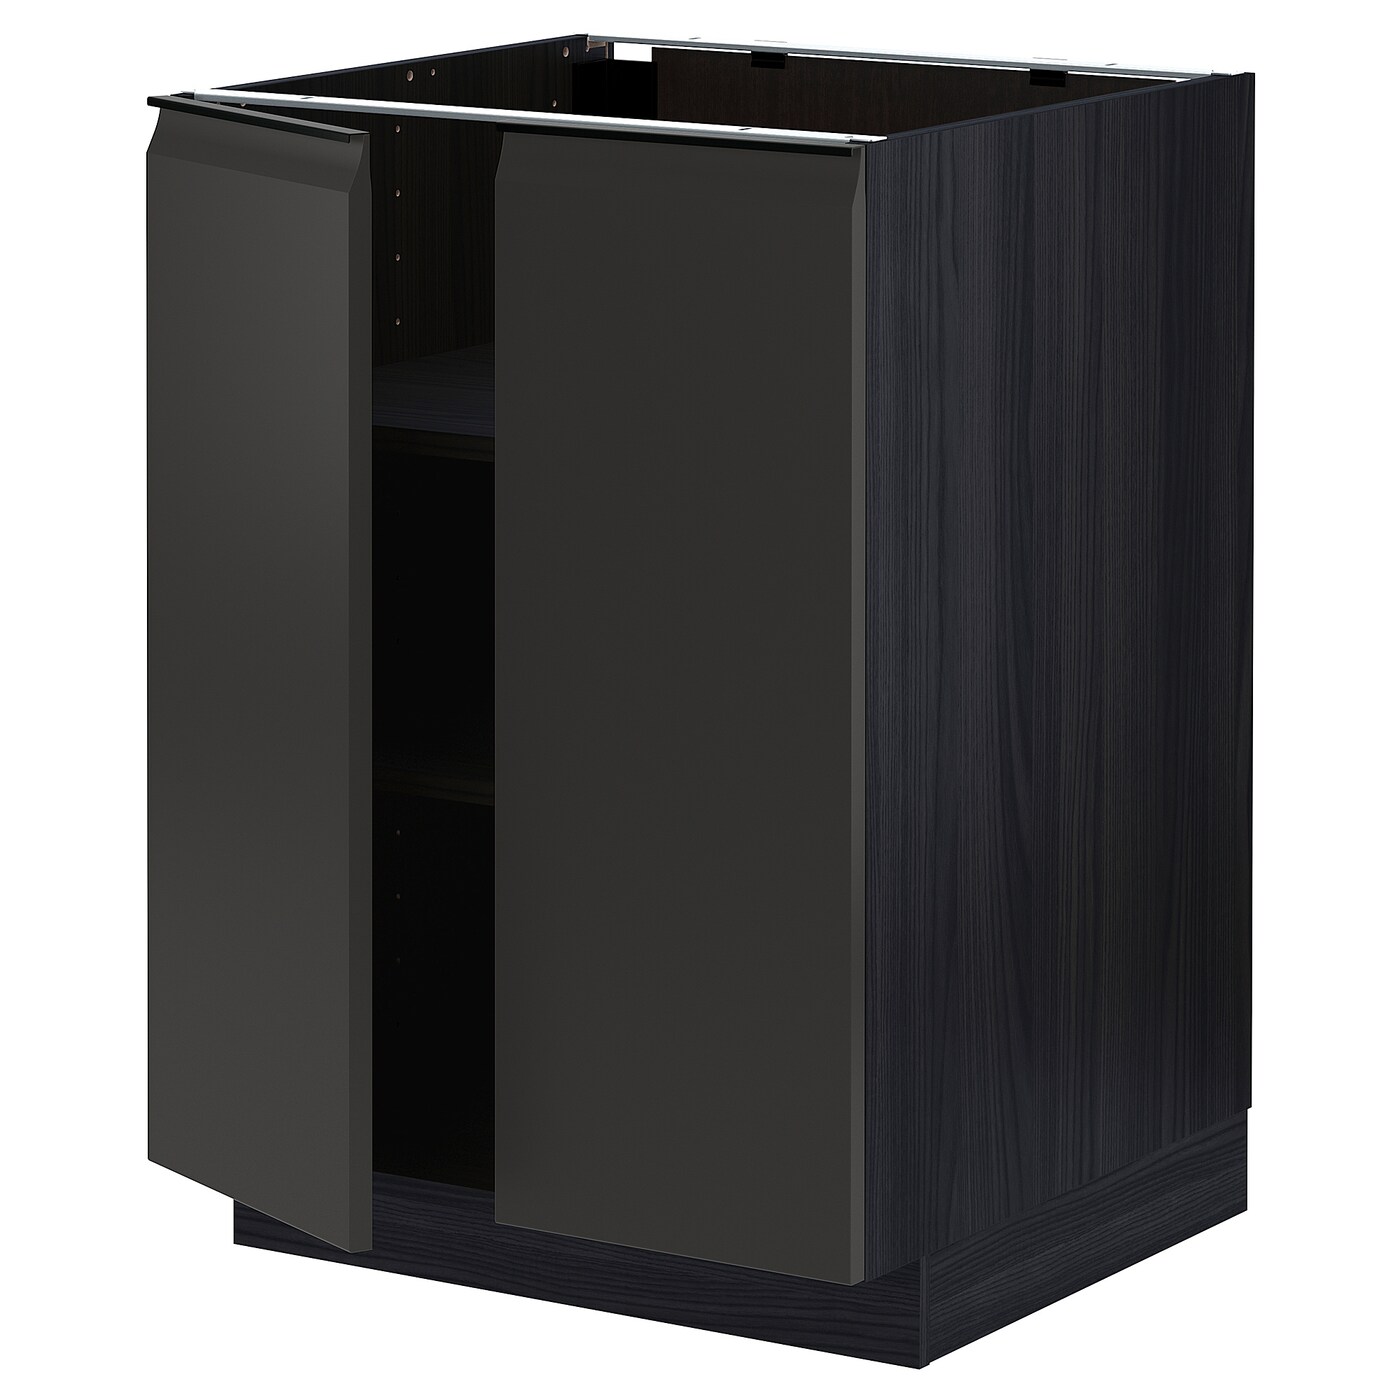 Напольный шкаф - METOD IKEA/ МЕТОД ИКЕА,  60х88 см, коричневый/черный